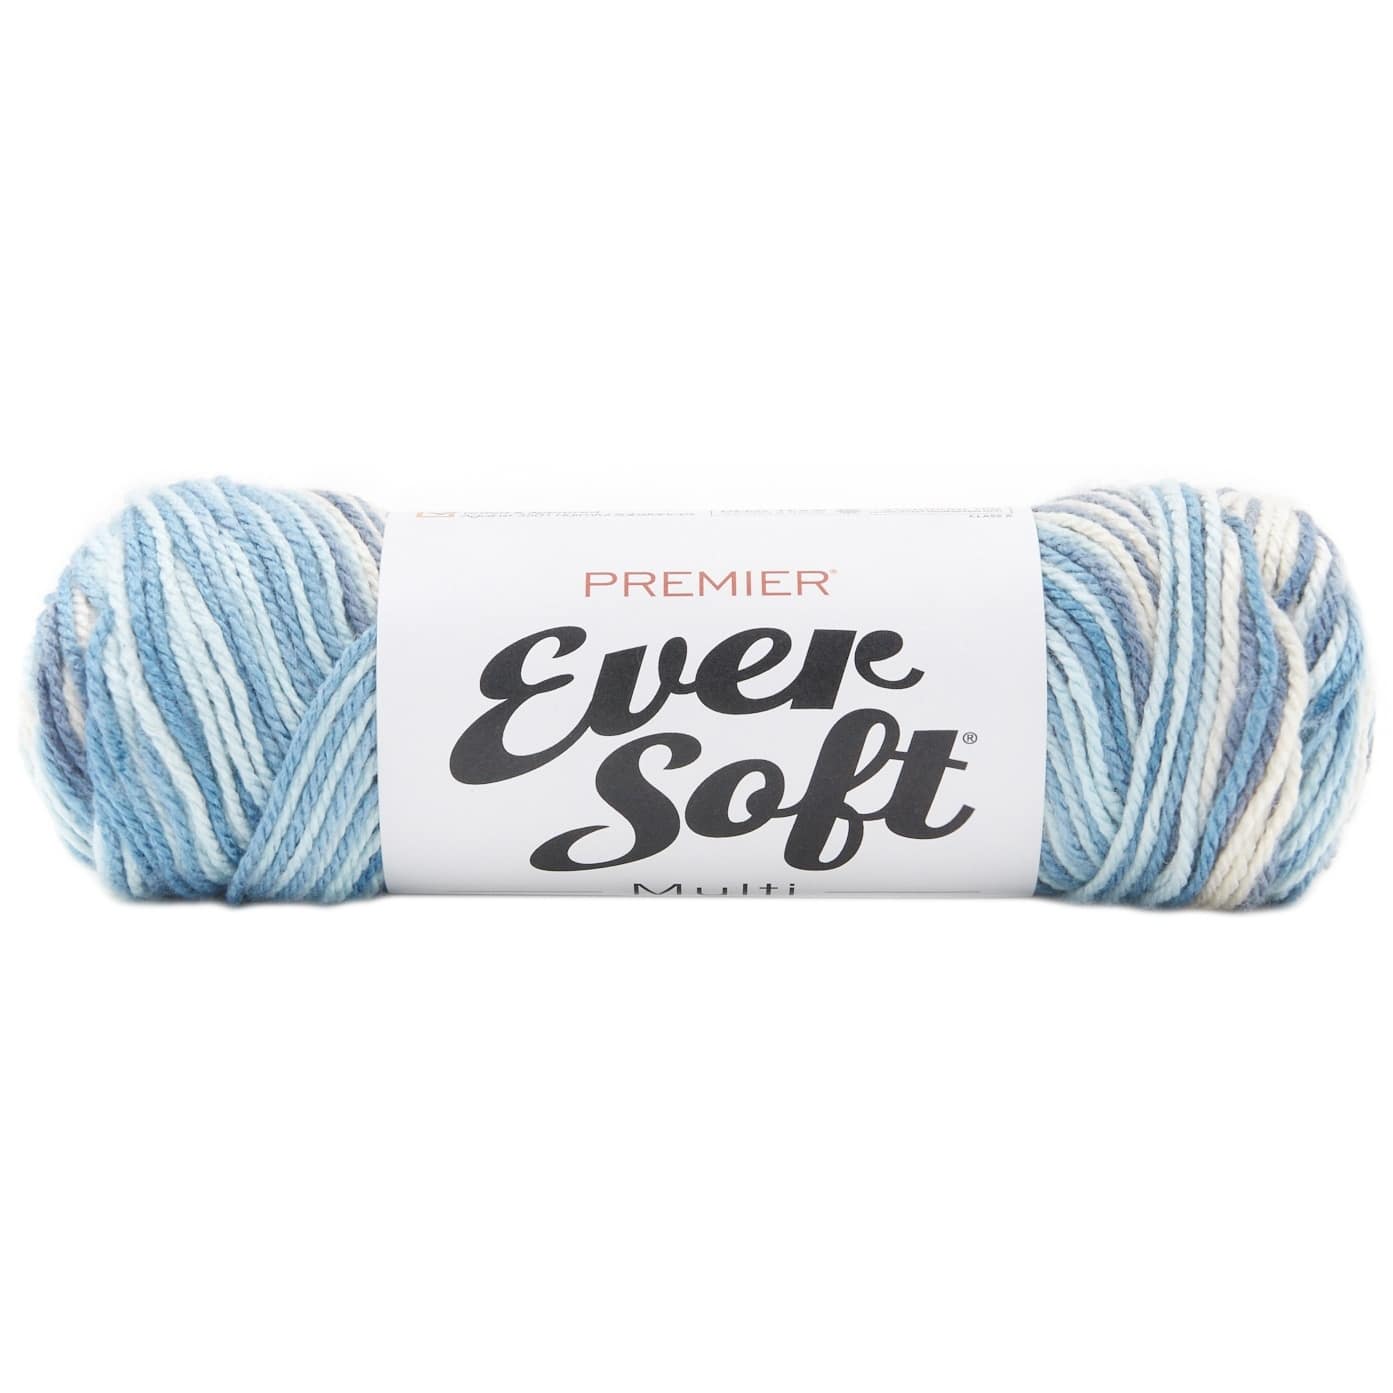 Premier Ever Soft Multi Yarn